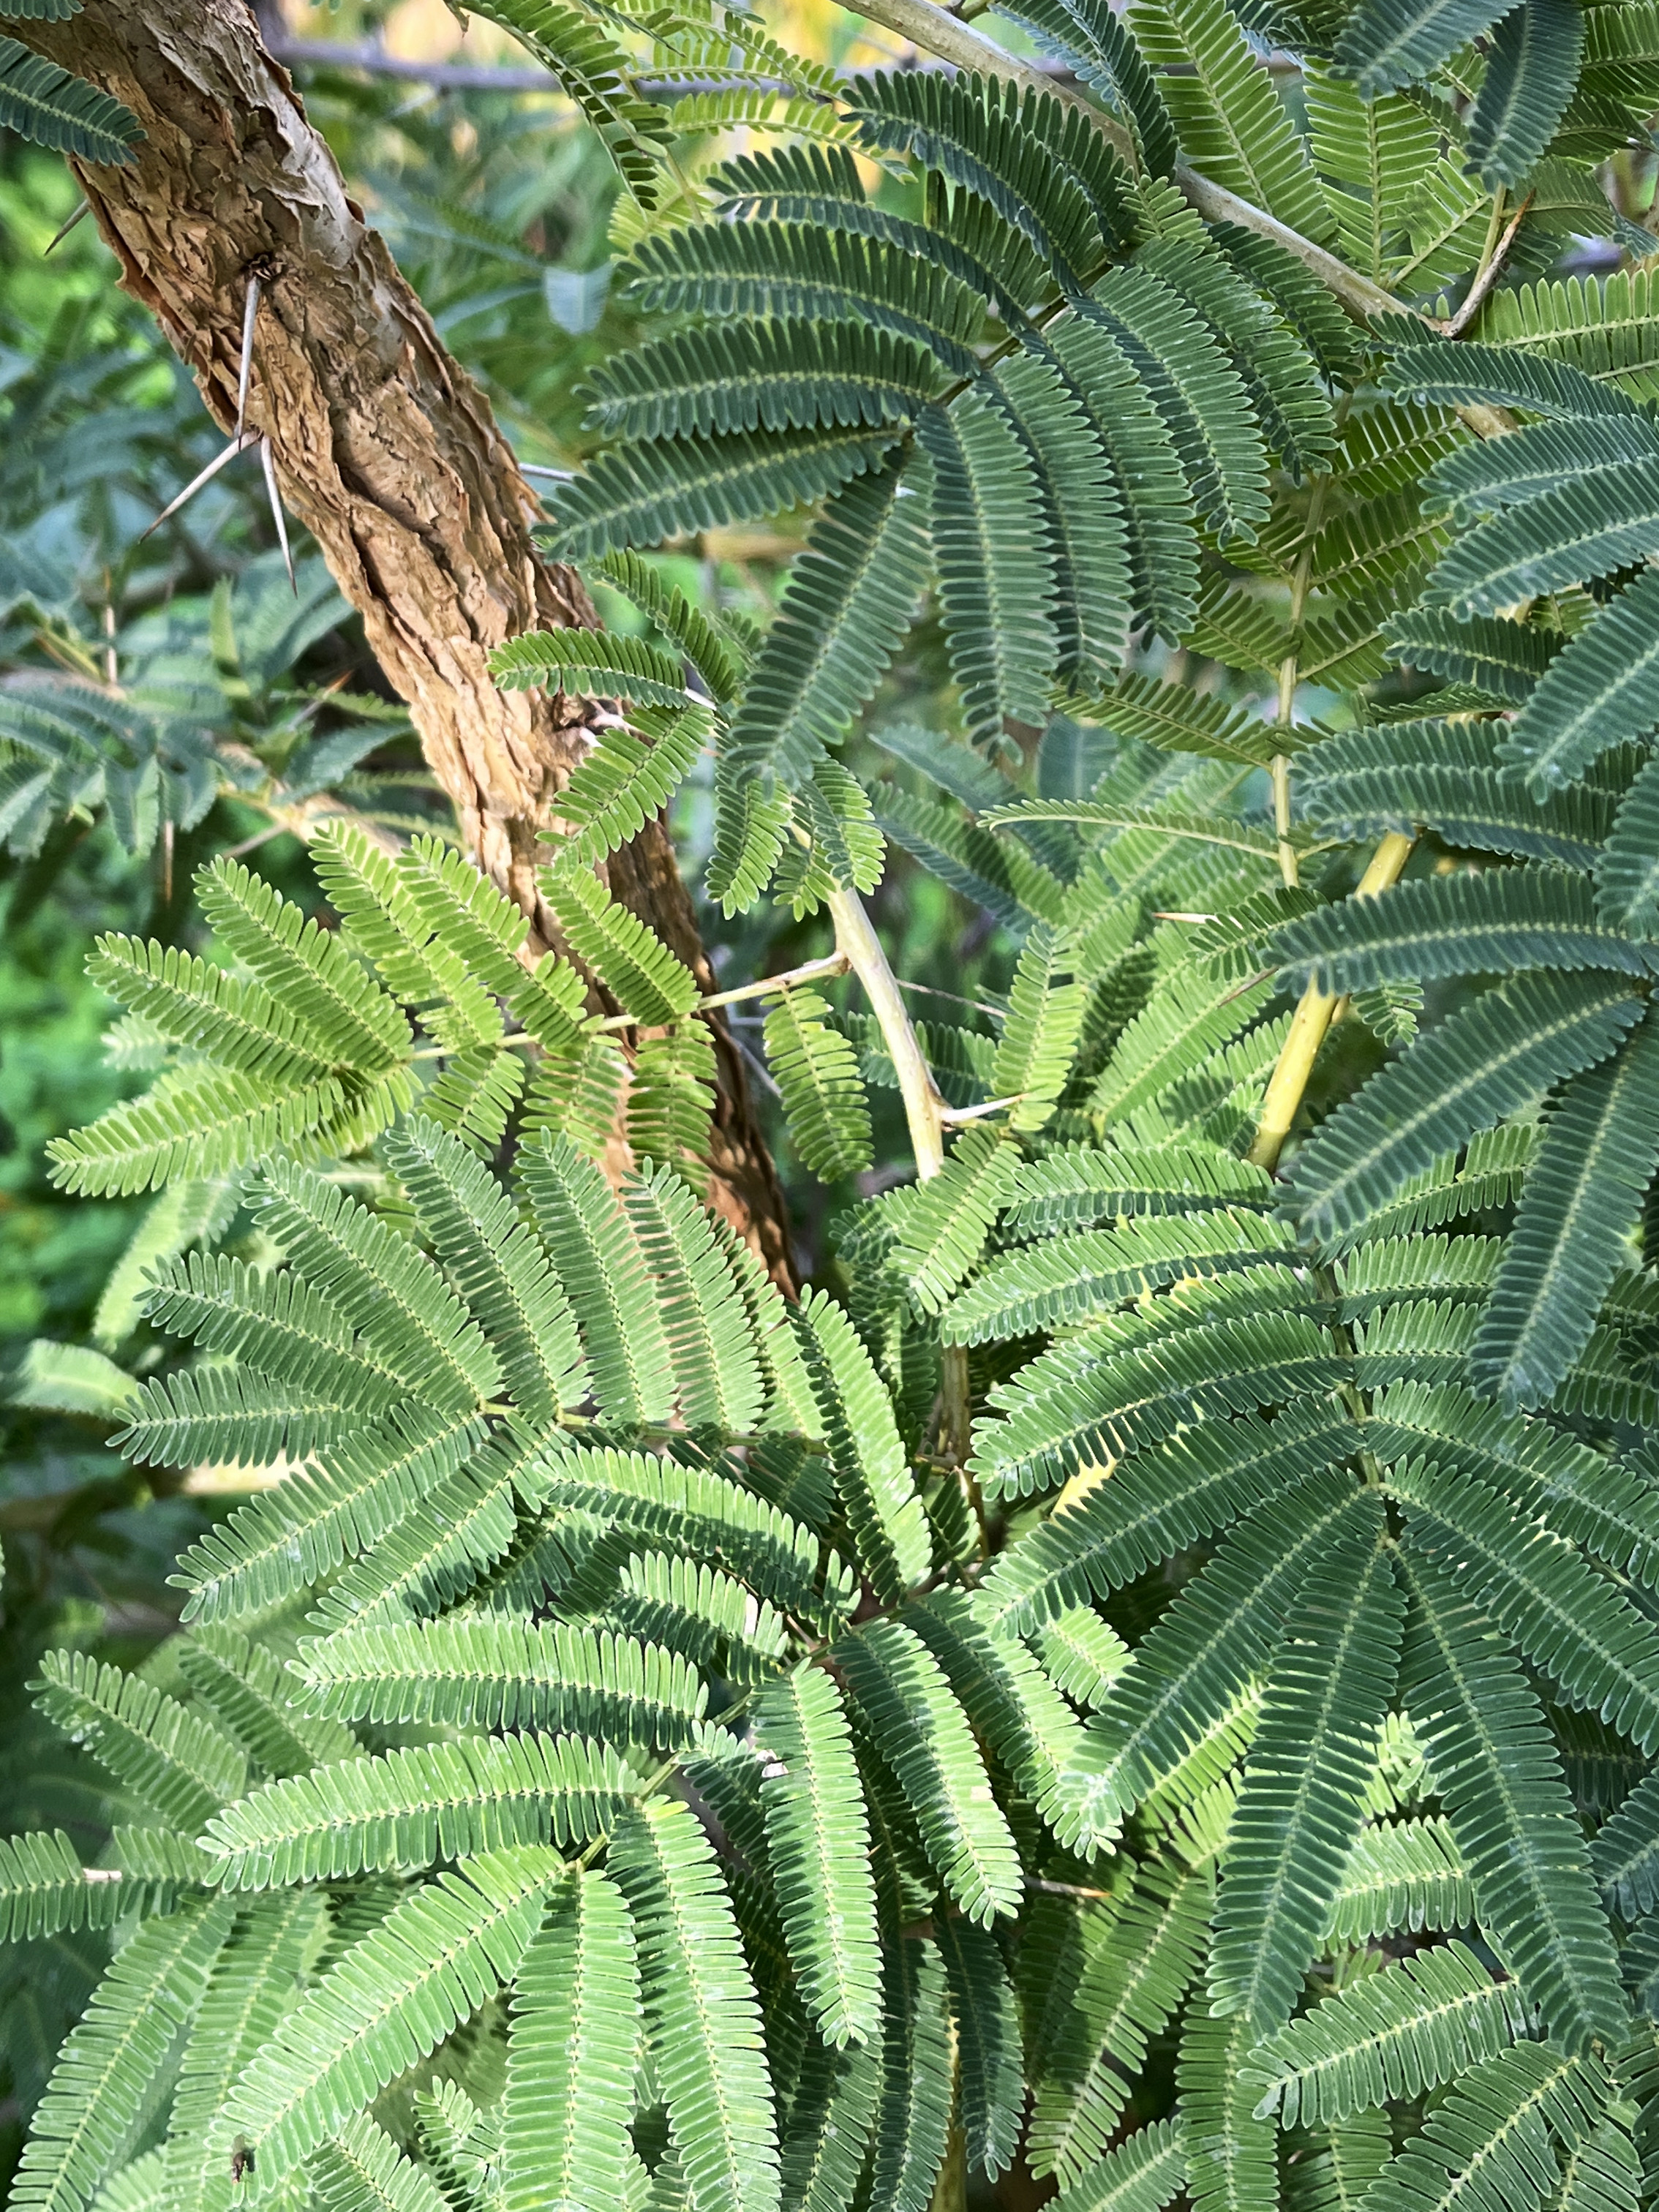 Acacia sieberiana